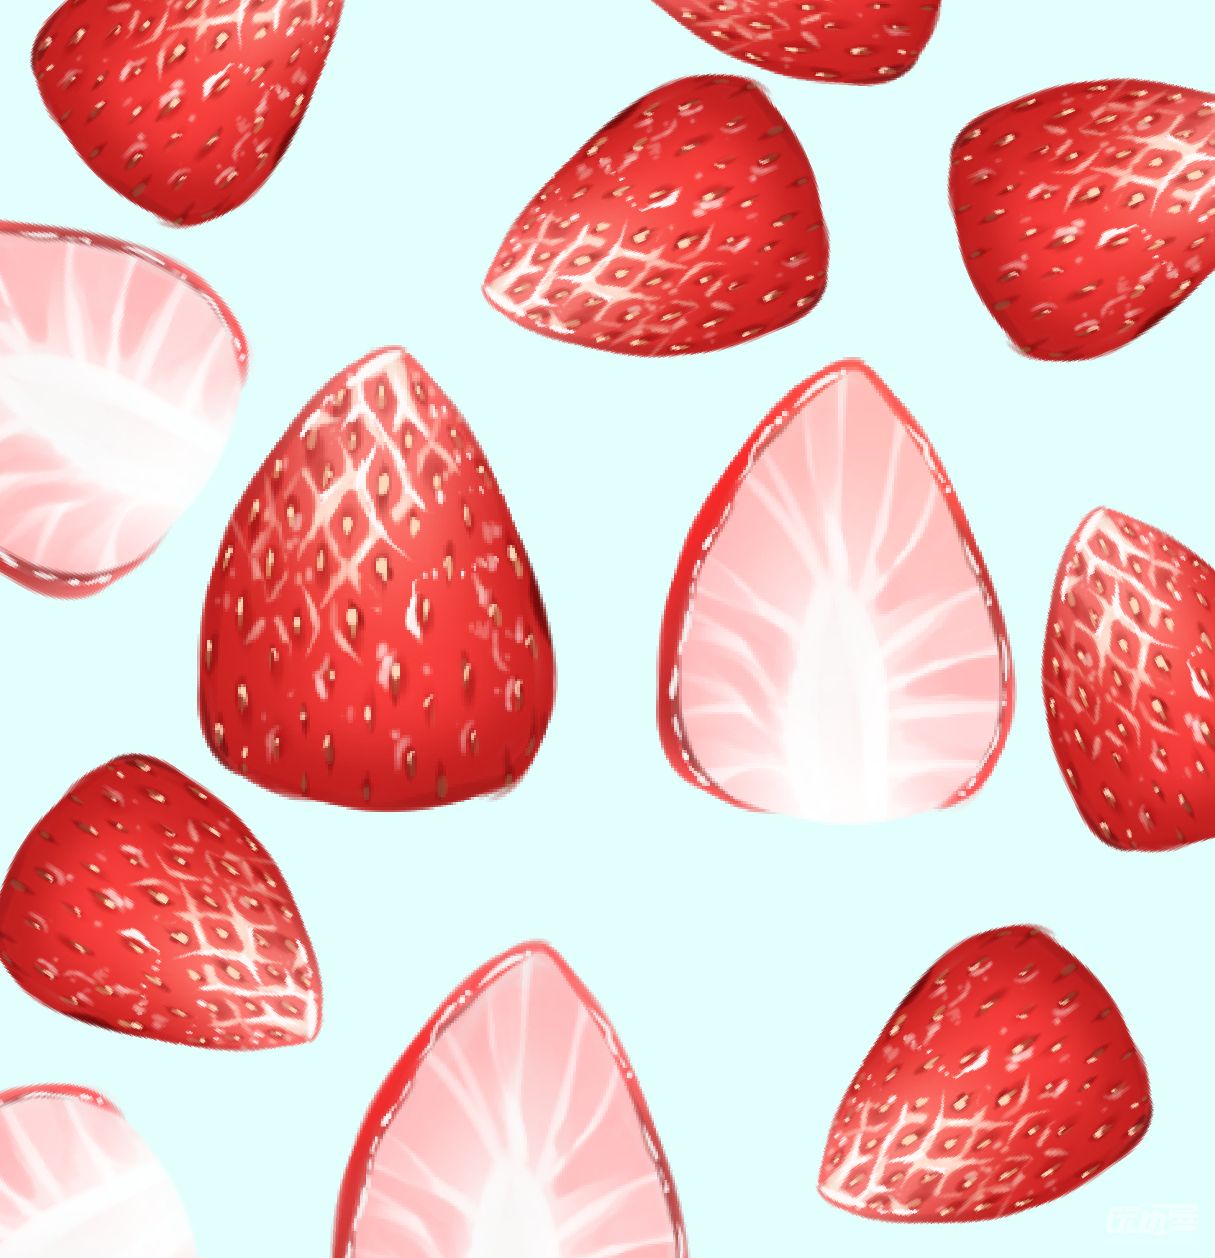 水果類卡通手繪風草莓PSD圖案素材免費下載 - 尺寸2000 × 2000px - 圖形ID401008803 - Lovepik